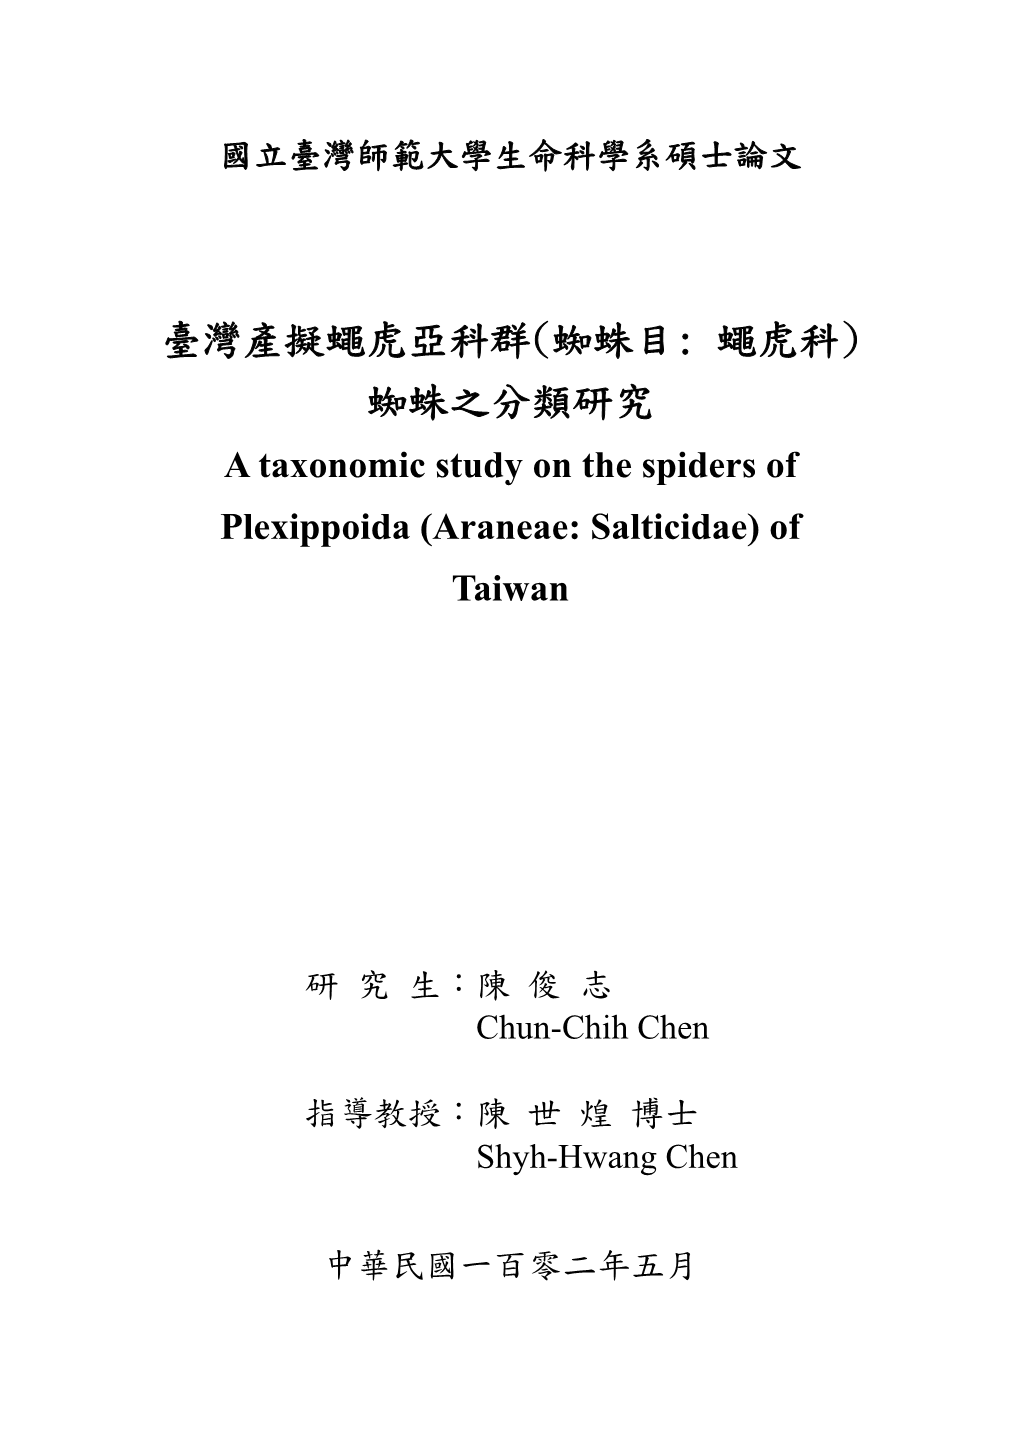 臺灣產擬蠅虎亞科群(蜘蛛目: 蠅虎科) 蜘蛛之分類研究 a Taxonomic Study on the Spiders of Plexippoida (Araneae: Salticidae) of Taiwan